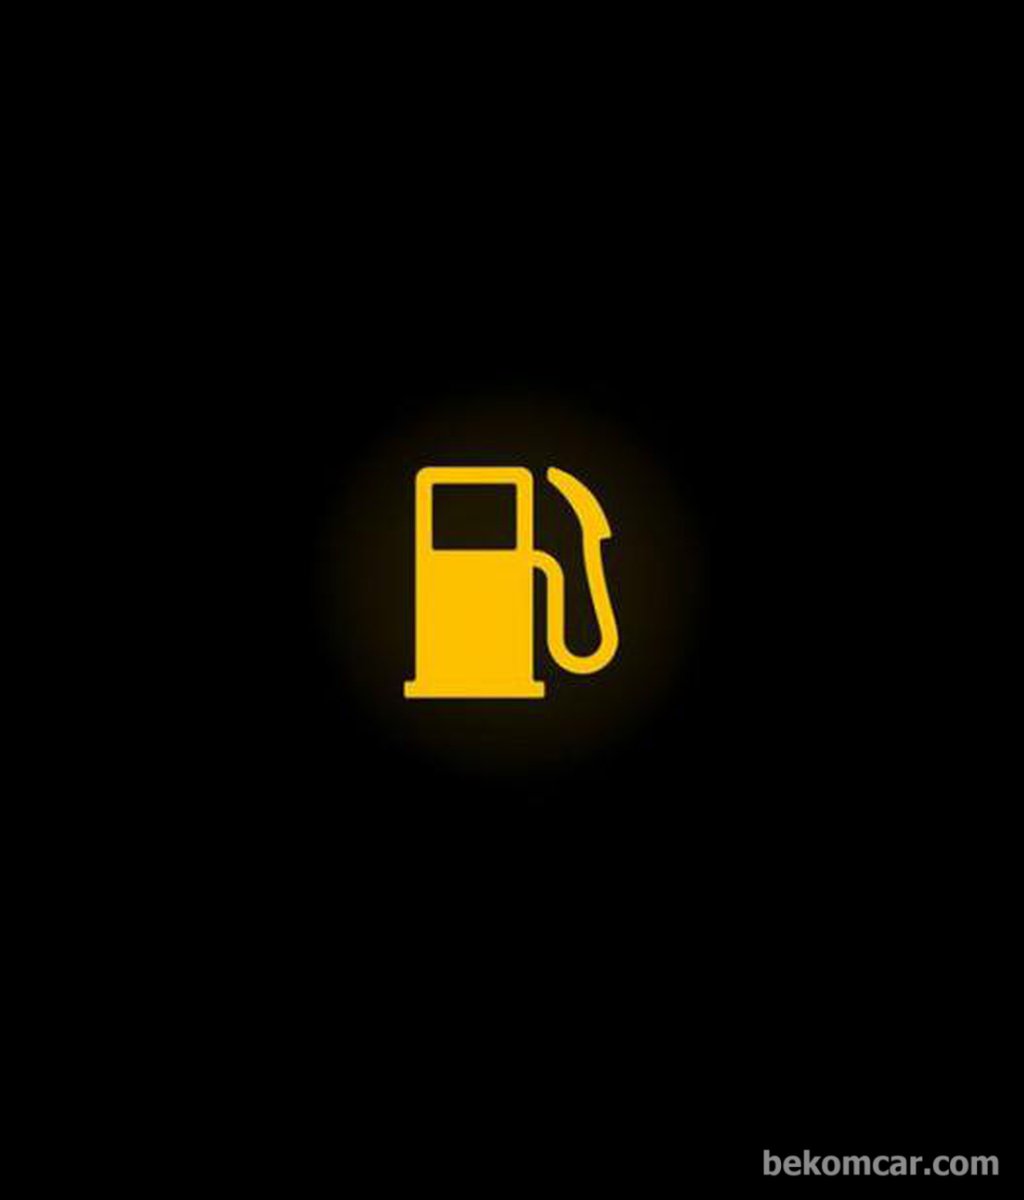 低油量警告|贝科姆汽车 (bekomcar)